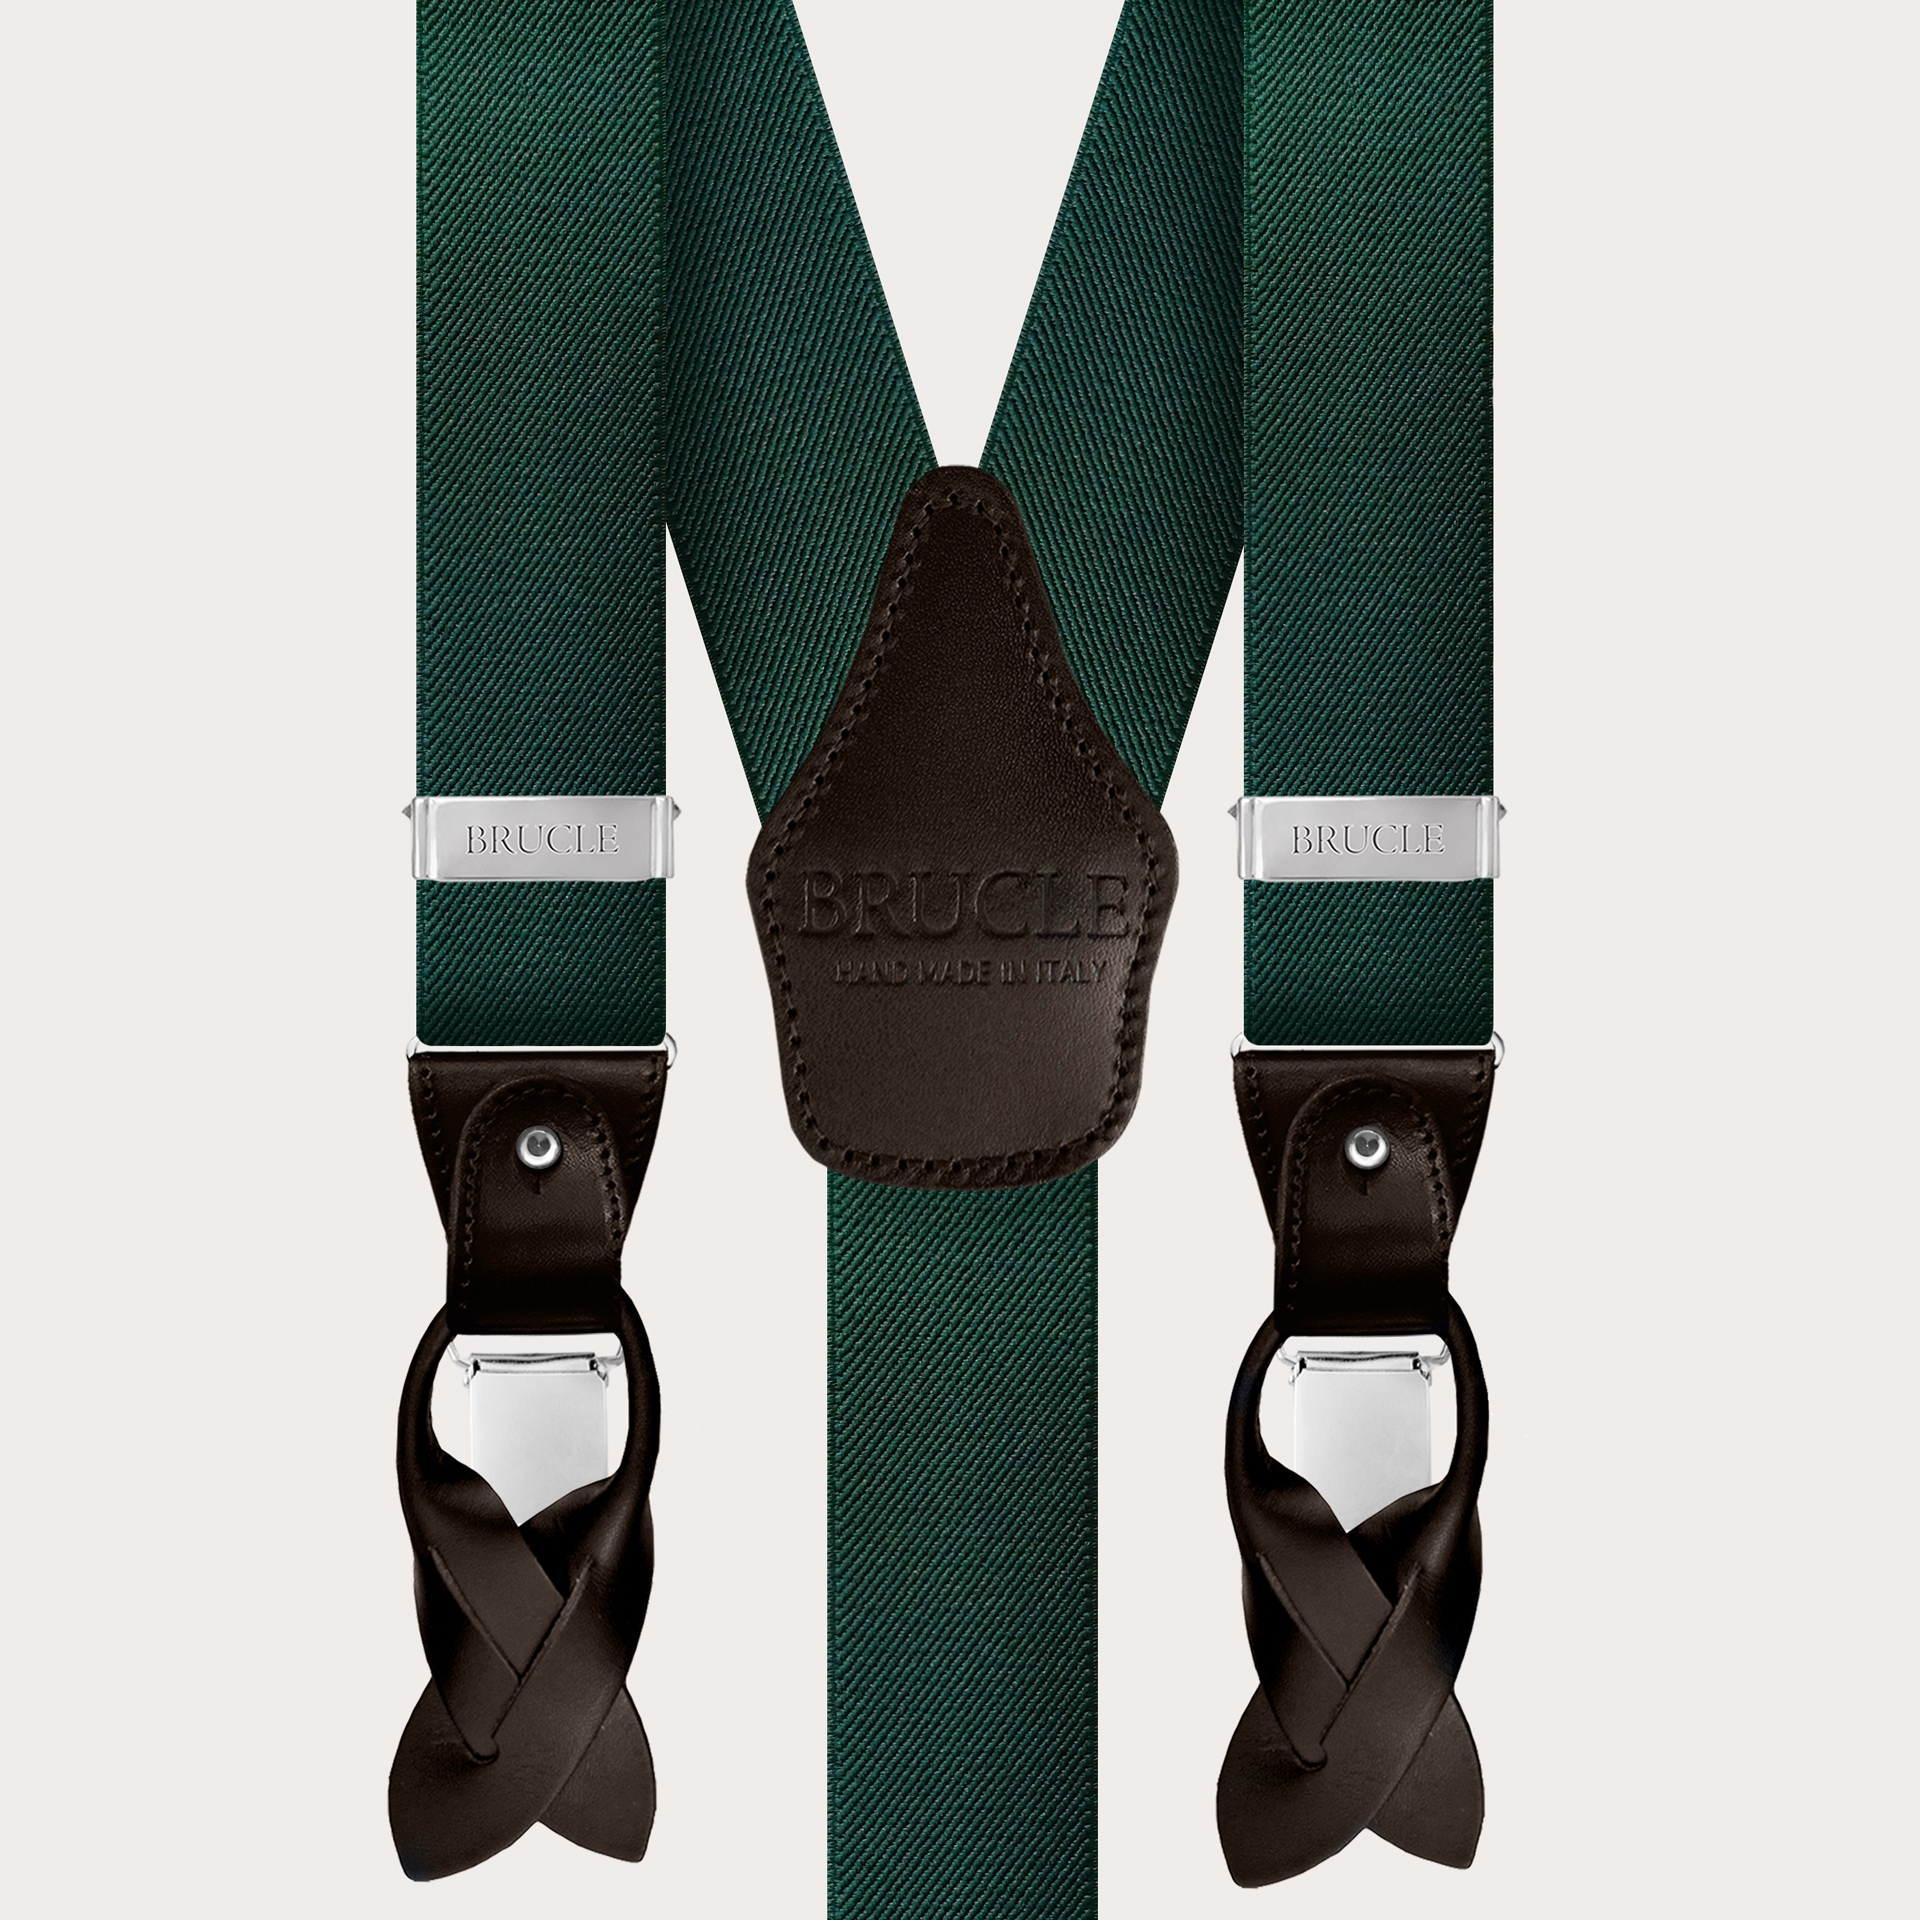 Y-shaped elastic royal blue suspenders